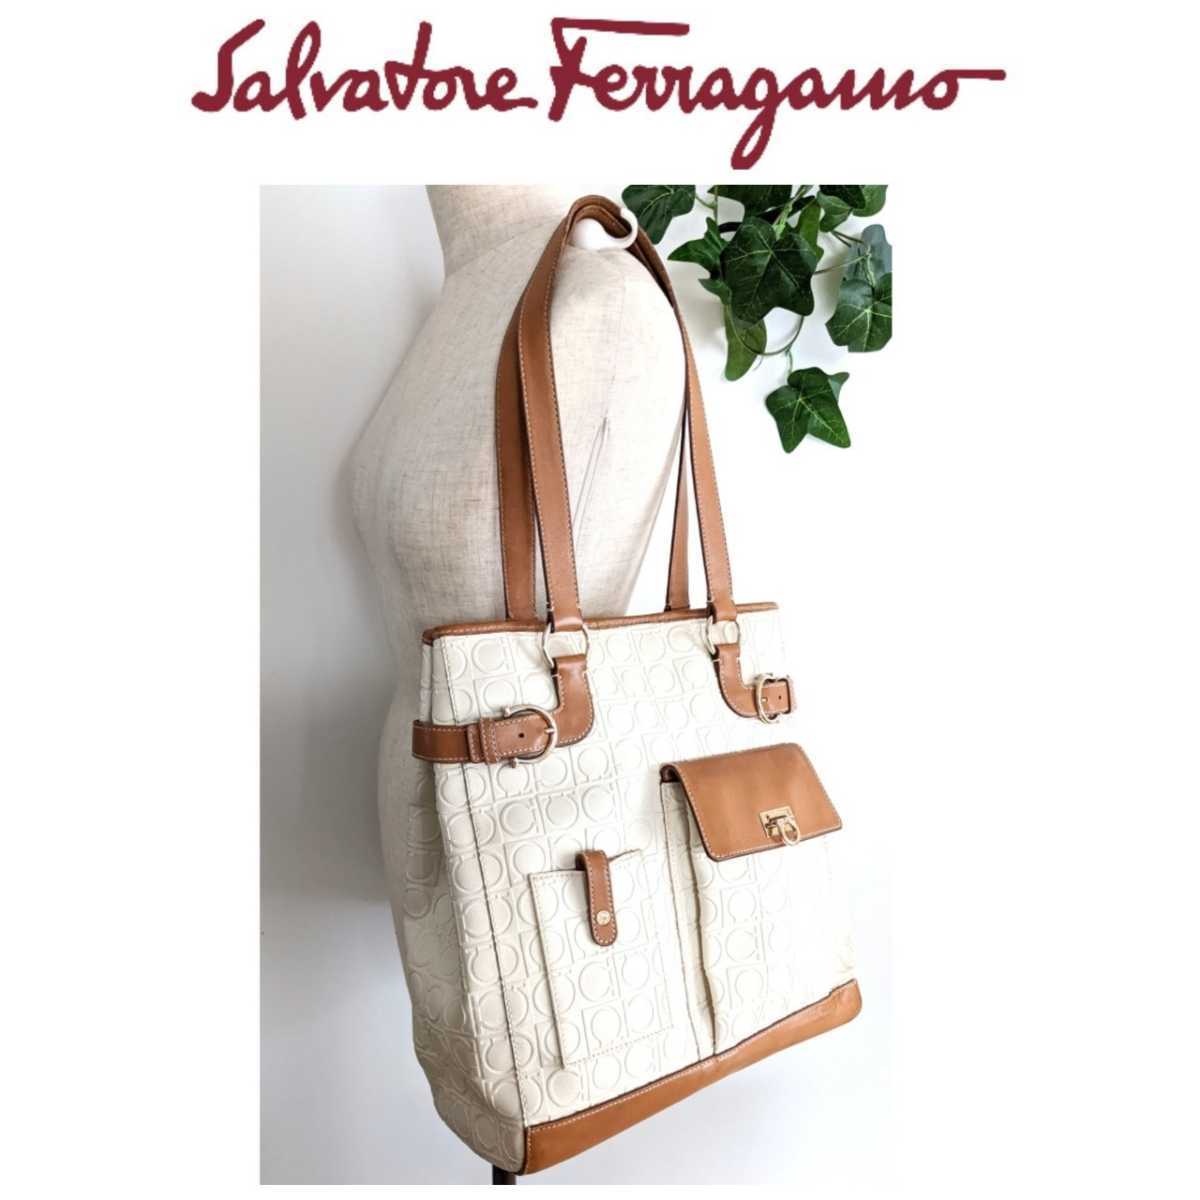 良品 Salvatore Ferragamo フェラガモ レザー トートバッグ ハンドバッグ ショルダーバッグ 鞄 キャメル ベージュ 白 レディース メンズ